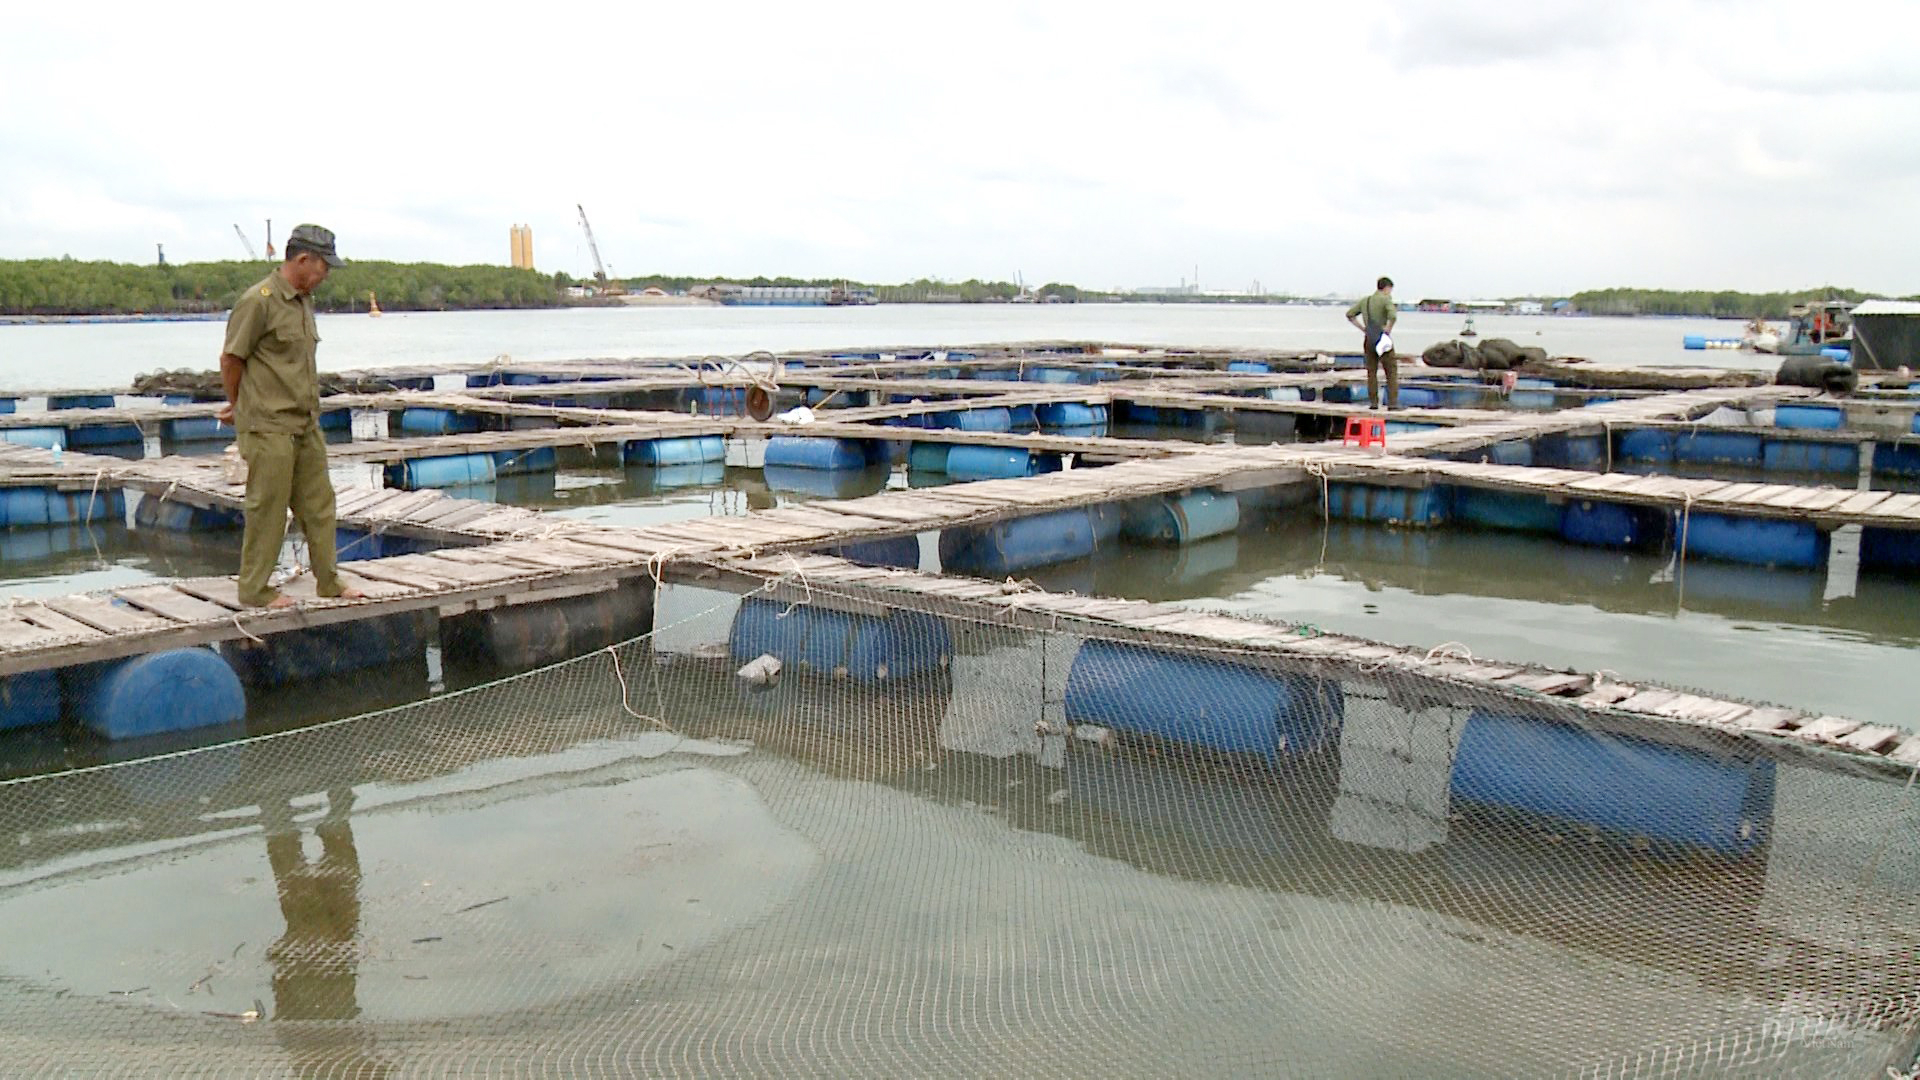 BR-VT dù đã phát triển ngành nuôi trồng thủy hải sản từ lâu, có diện tích nuôi trồng lớn, nhưng vẫn nằm chủ yếu ở các khu vực cửa sông, cửa biển, gần bờ. Ảnh: Hồng Thủy.